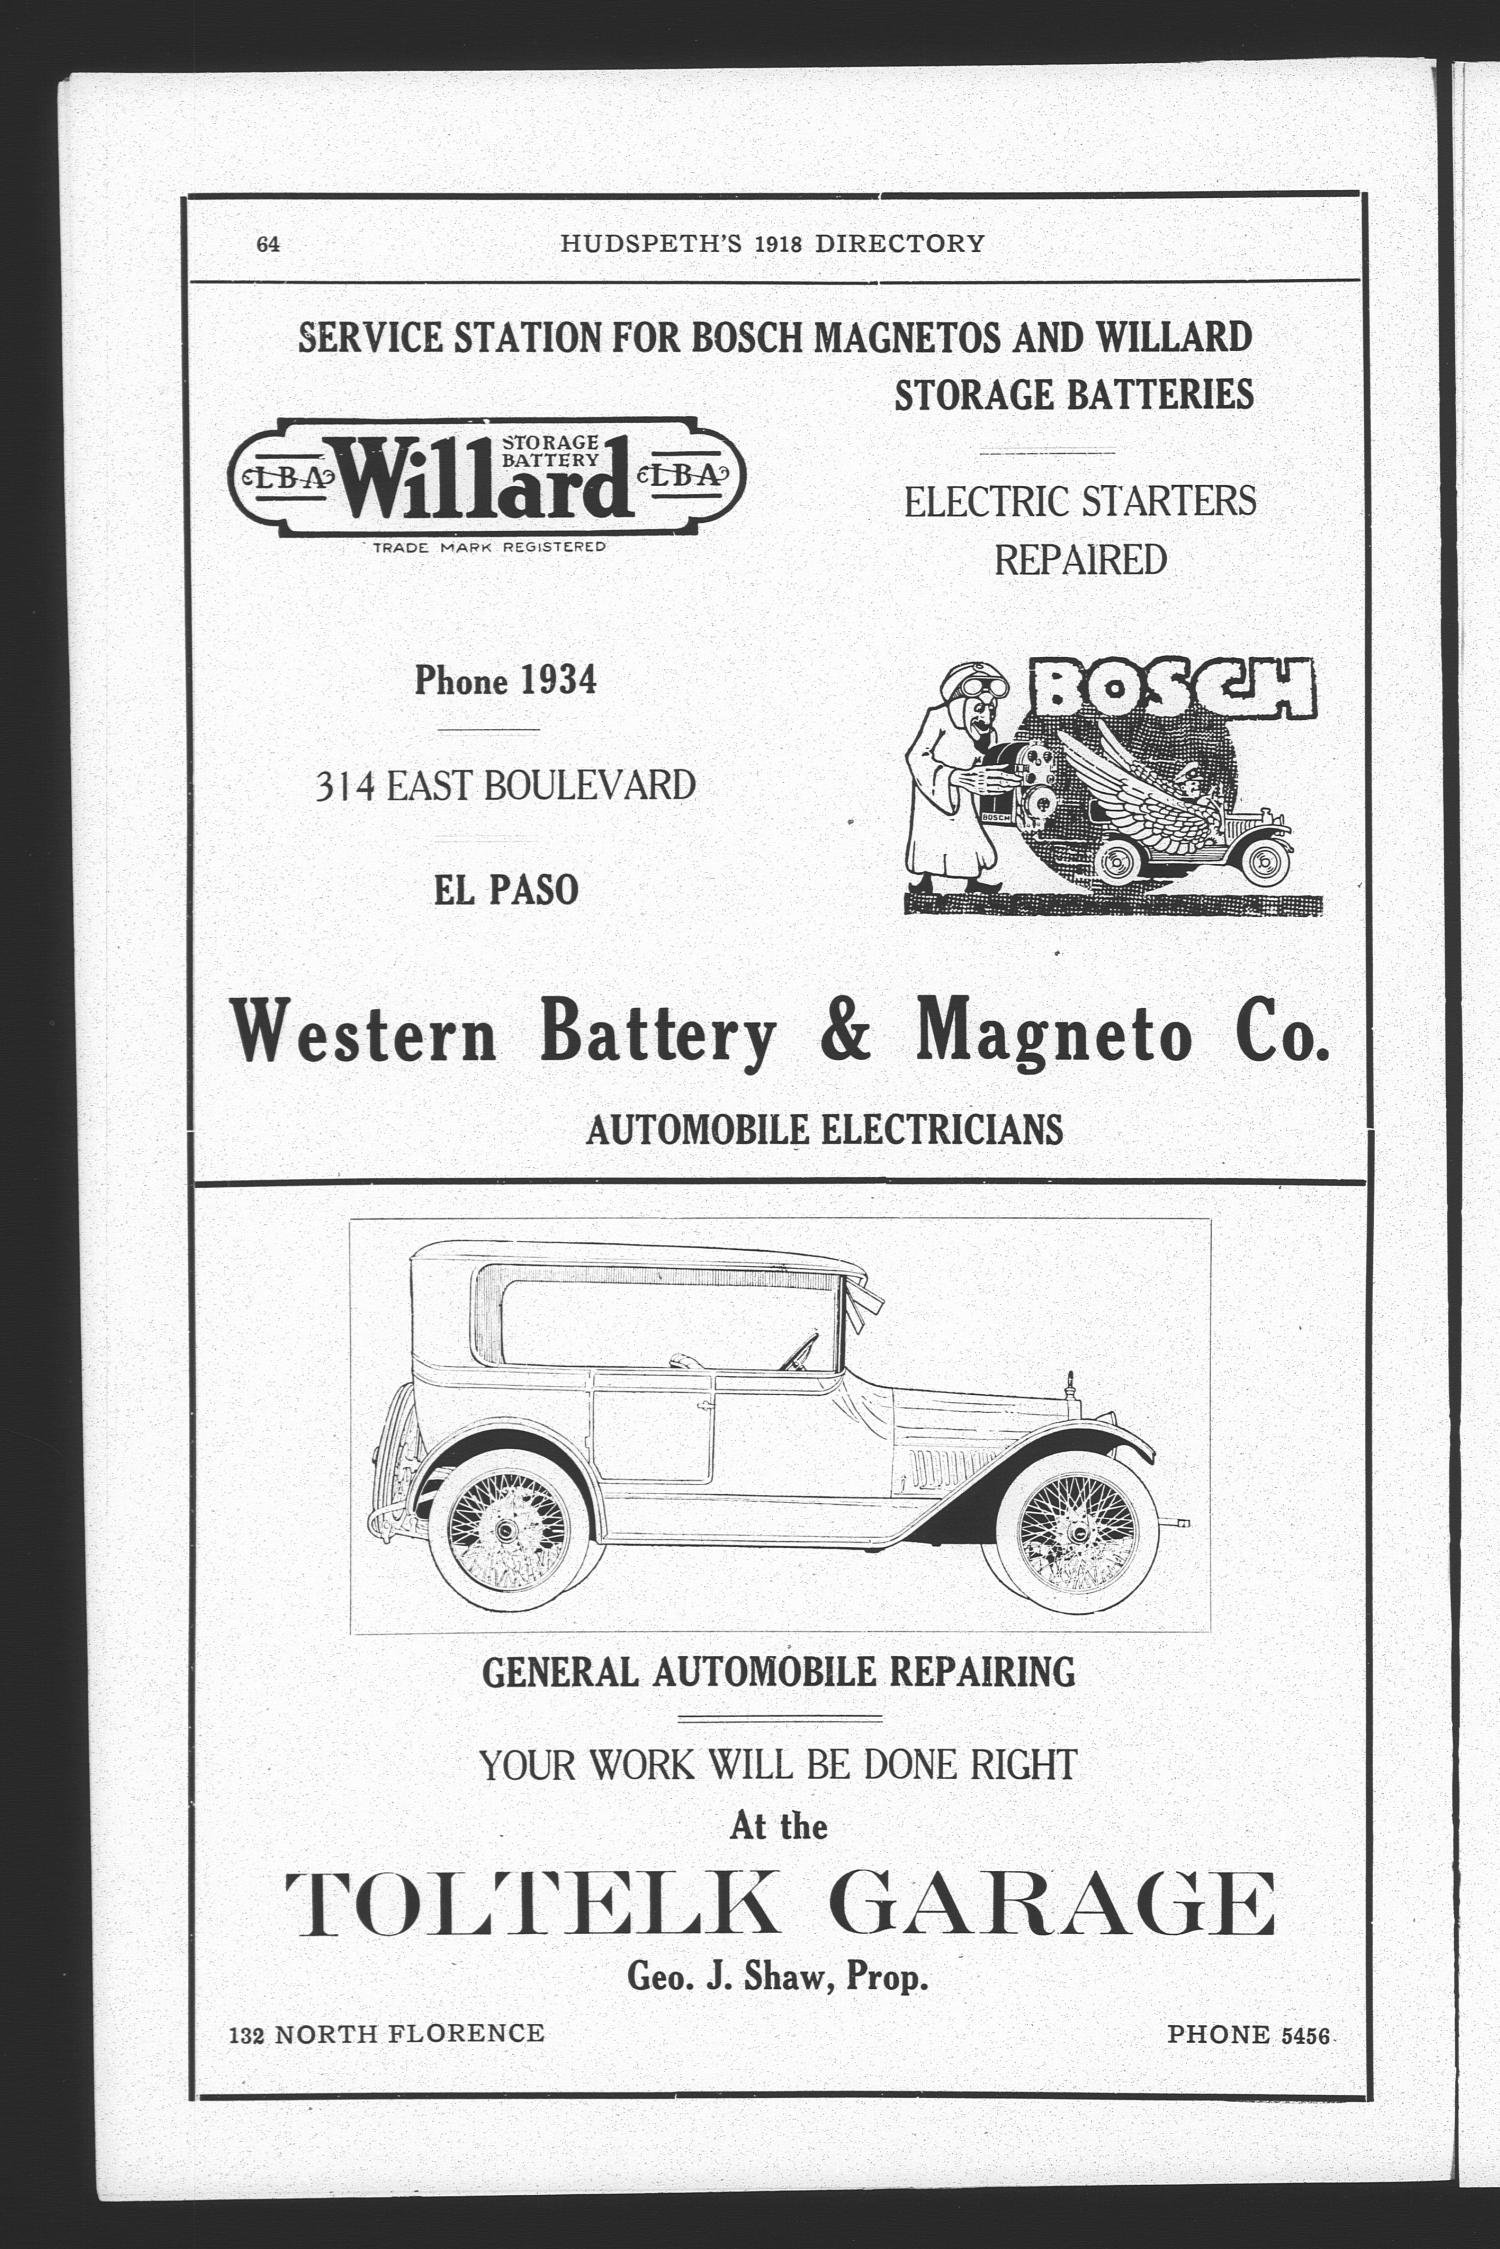 El Paso City Directory, 1918
                                                
                                                    64
                                                